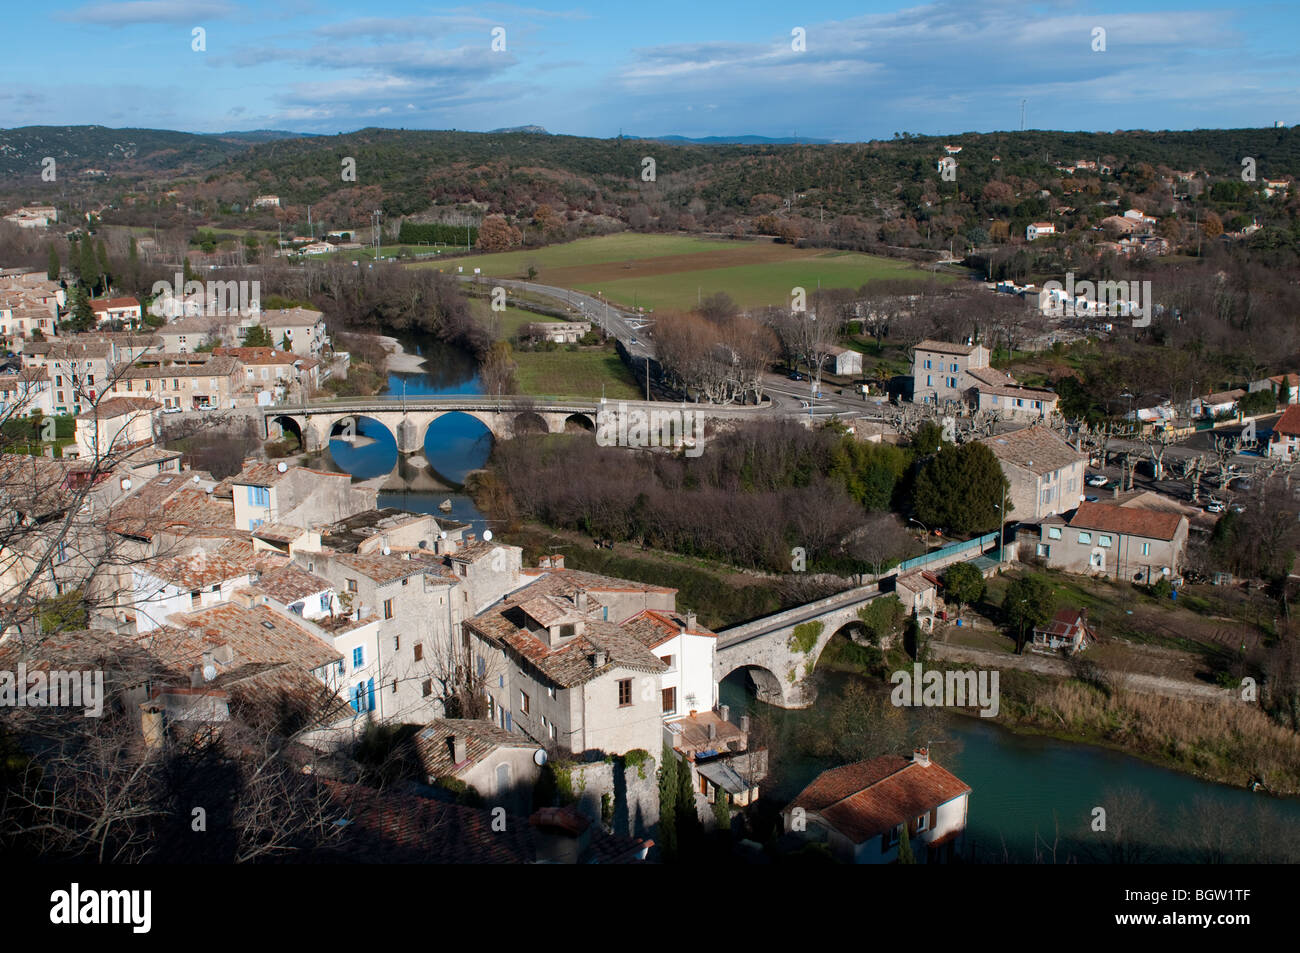 Vue sur la ville médiévale de Sauve avec deux ponts sur la rivière Vidourle, Gard, sud de la France Banque D'Images